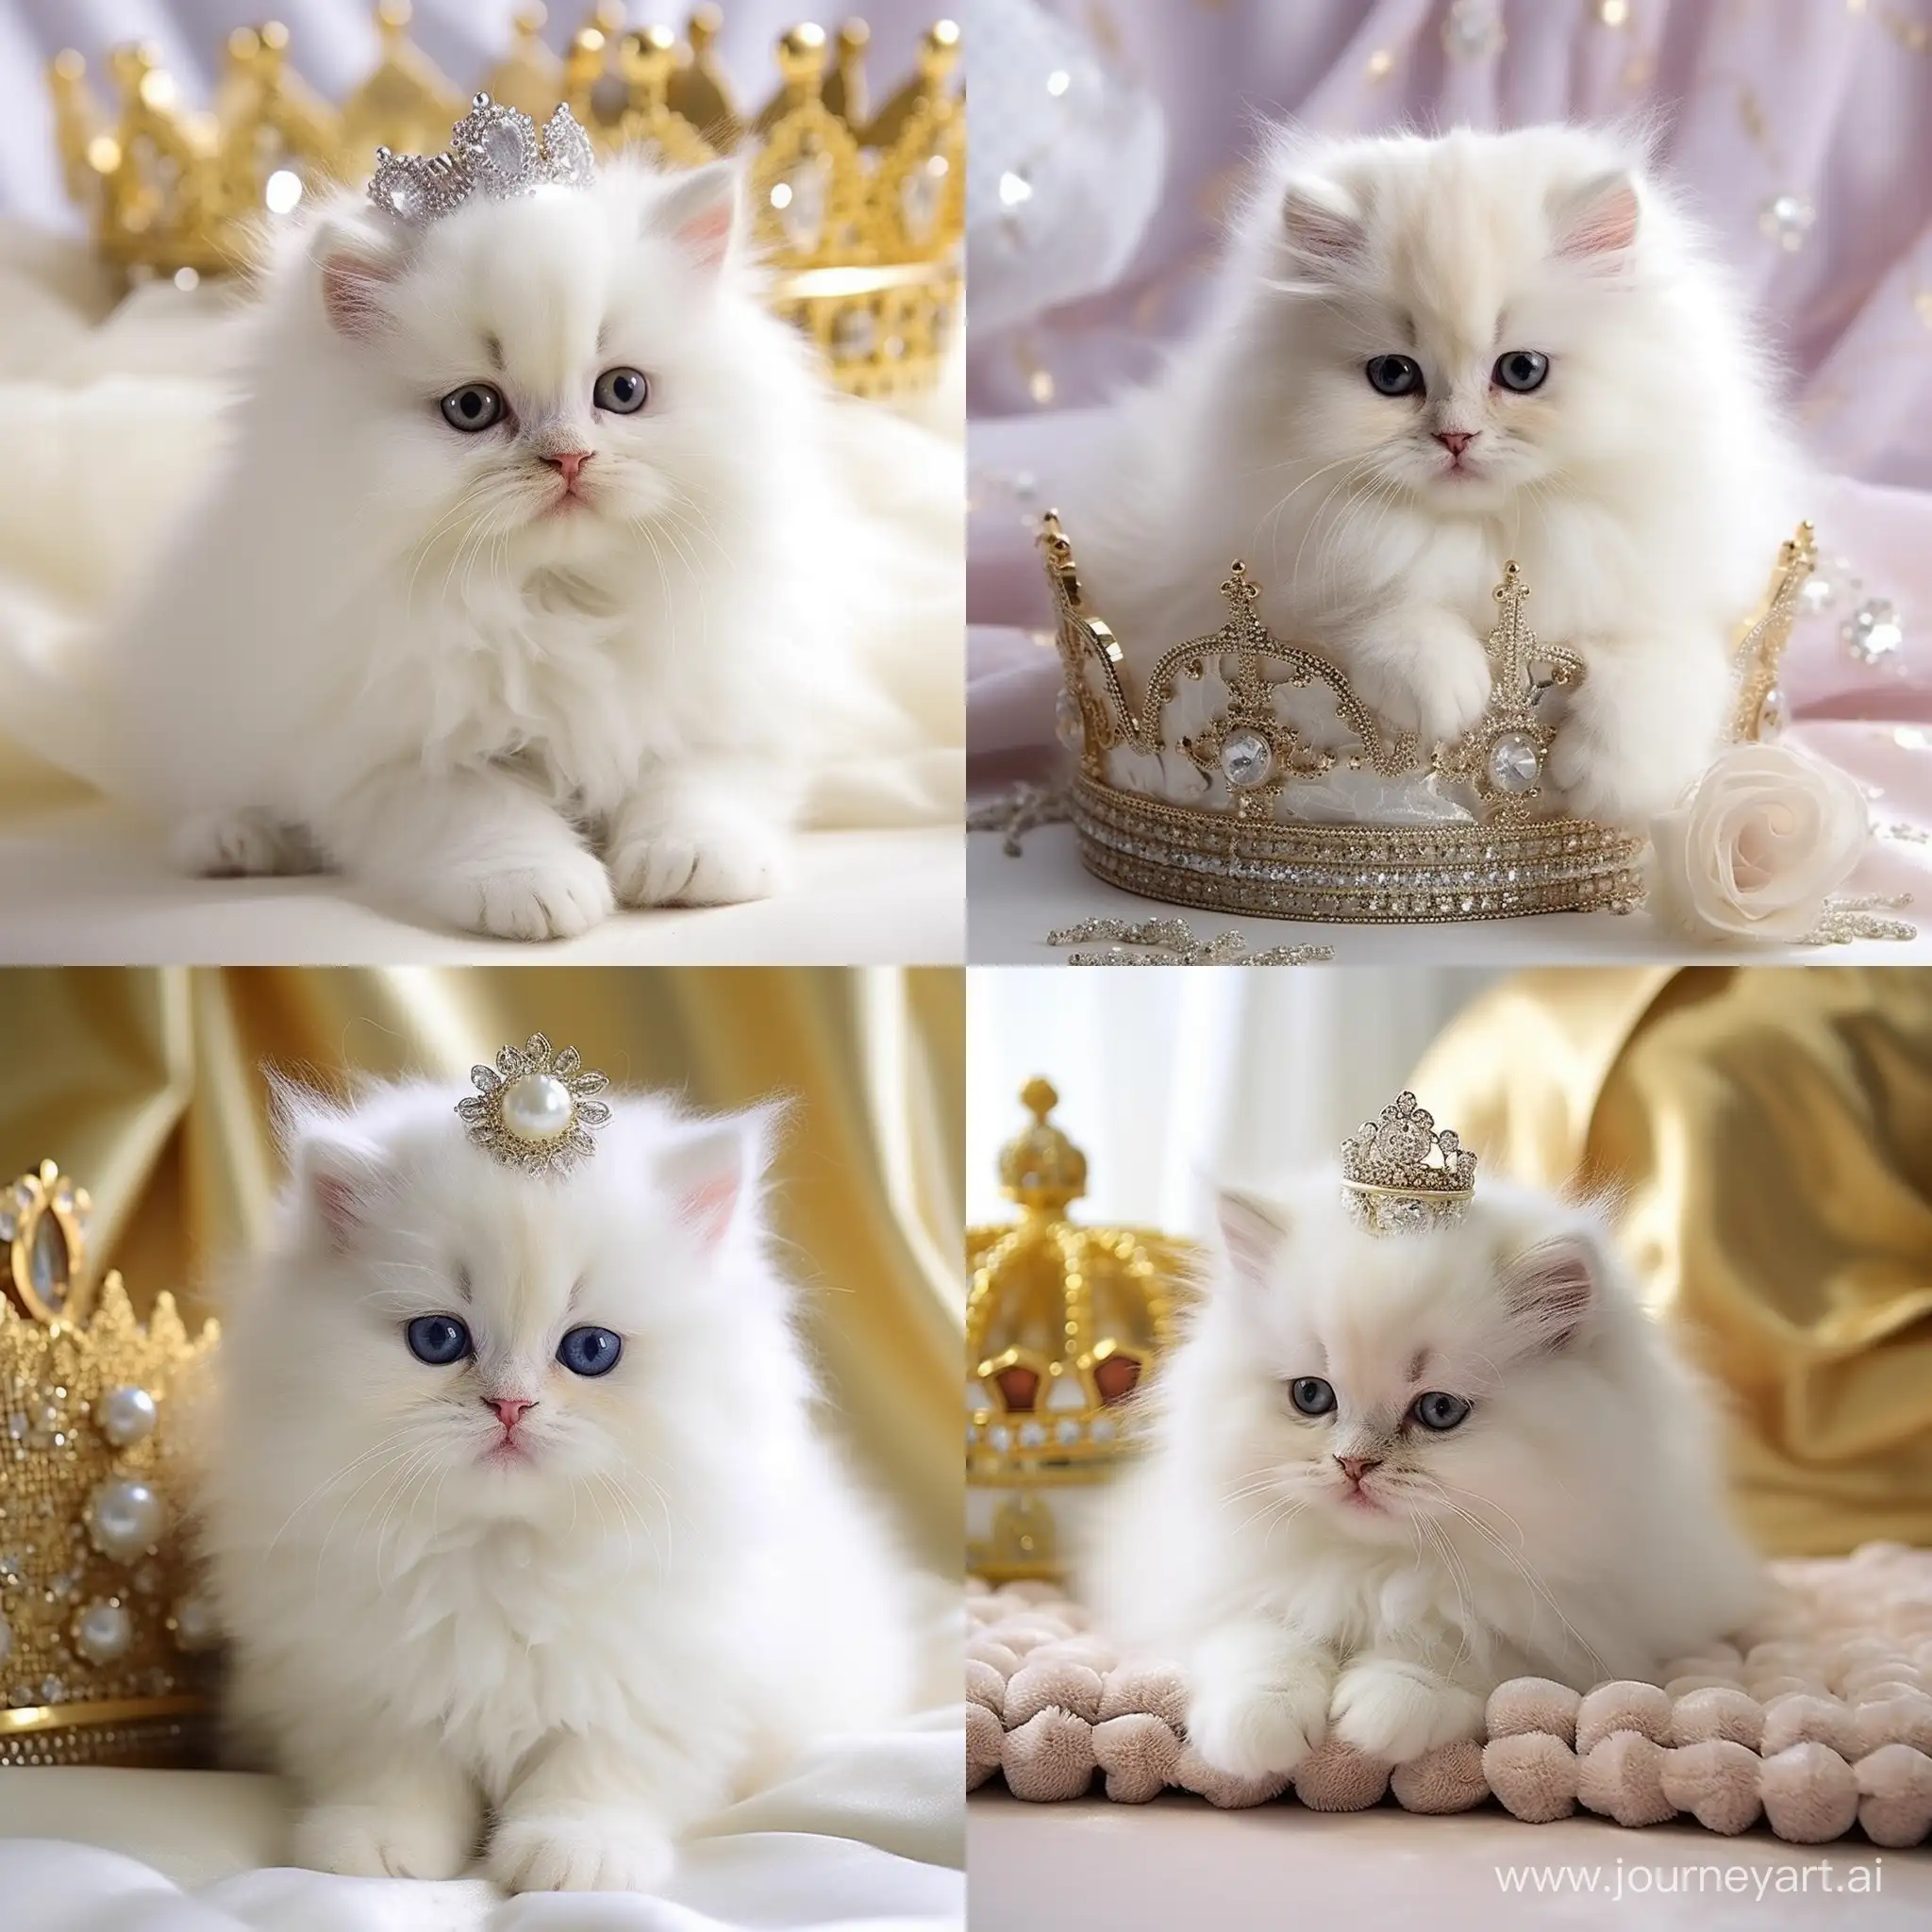 кошачье царство  ПОРОДА,,,Белый персидский котик стоит на первой  линии.  Много  кошечек, котов,,,больших и маленьких... Но главная- королева...   С короной и украшениями королевскми... М внутренним голосом говорит...   Мы даем тебе члена королевской семьи...  Это принц.. Береги его, лелей его...А малыш котик смотрит   янтарными глазами...Розовый носик в виде сердечка...Белый, пушистый... Прекрасный...